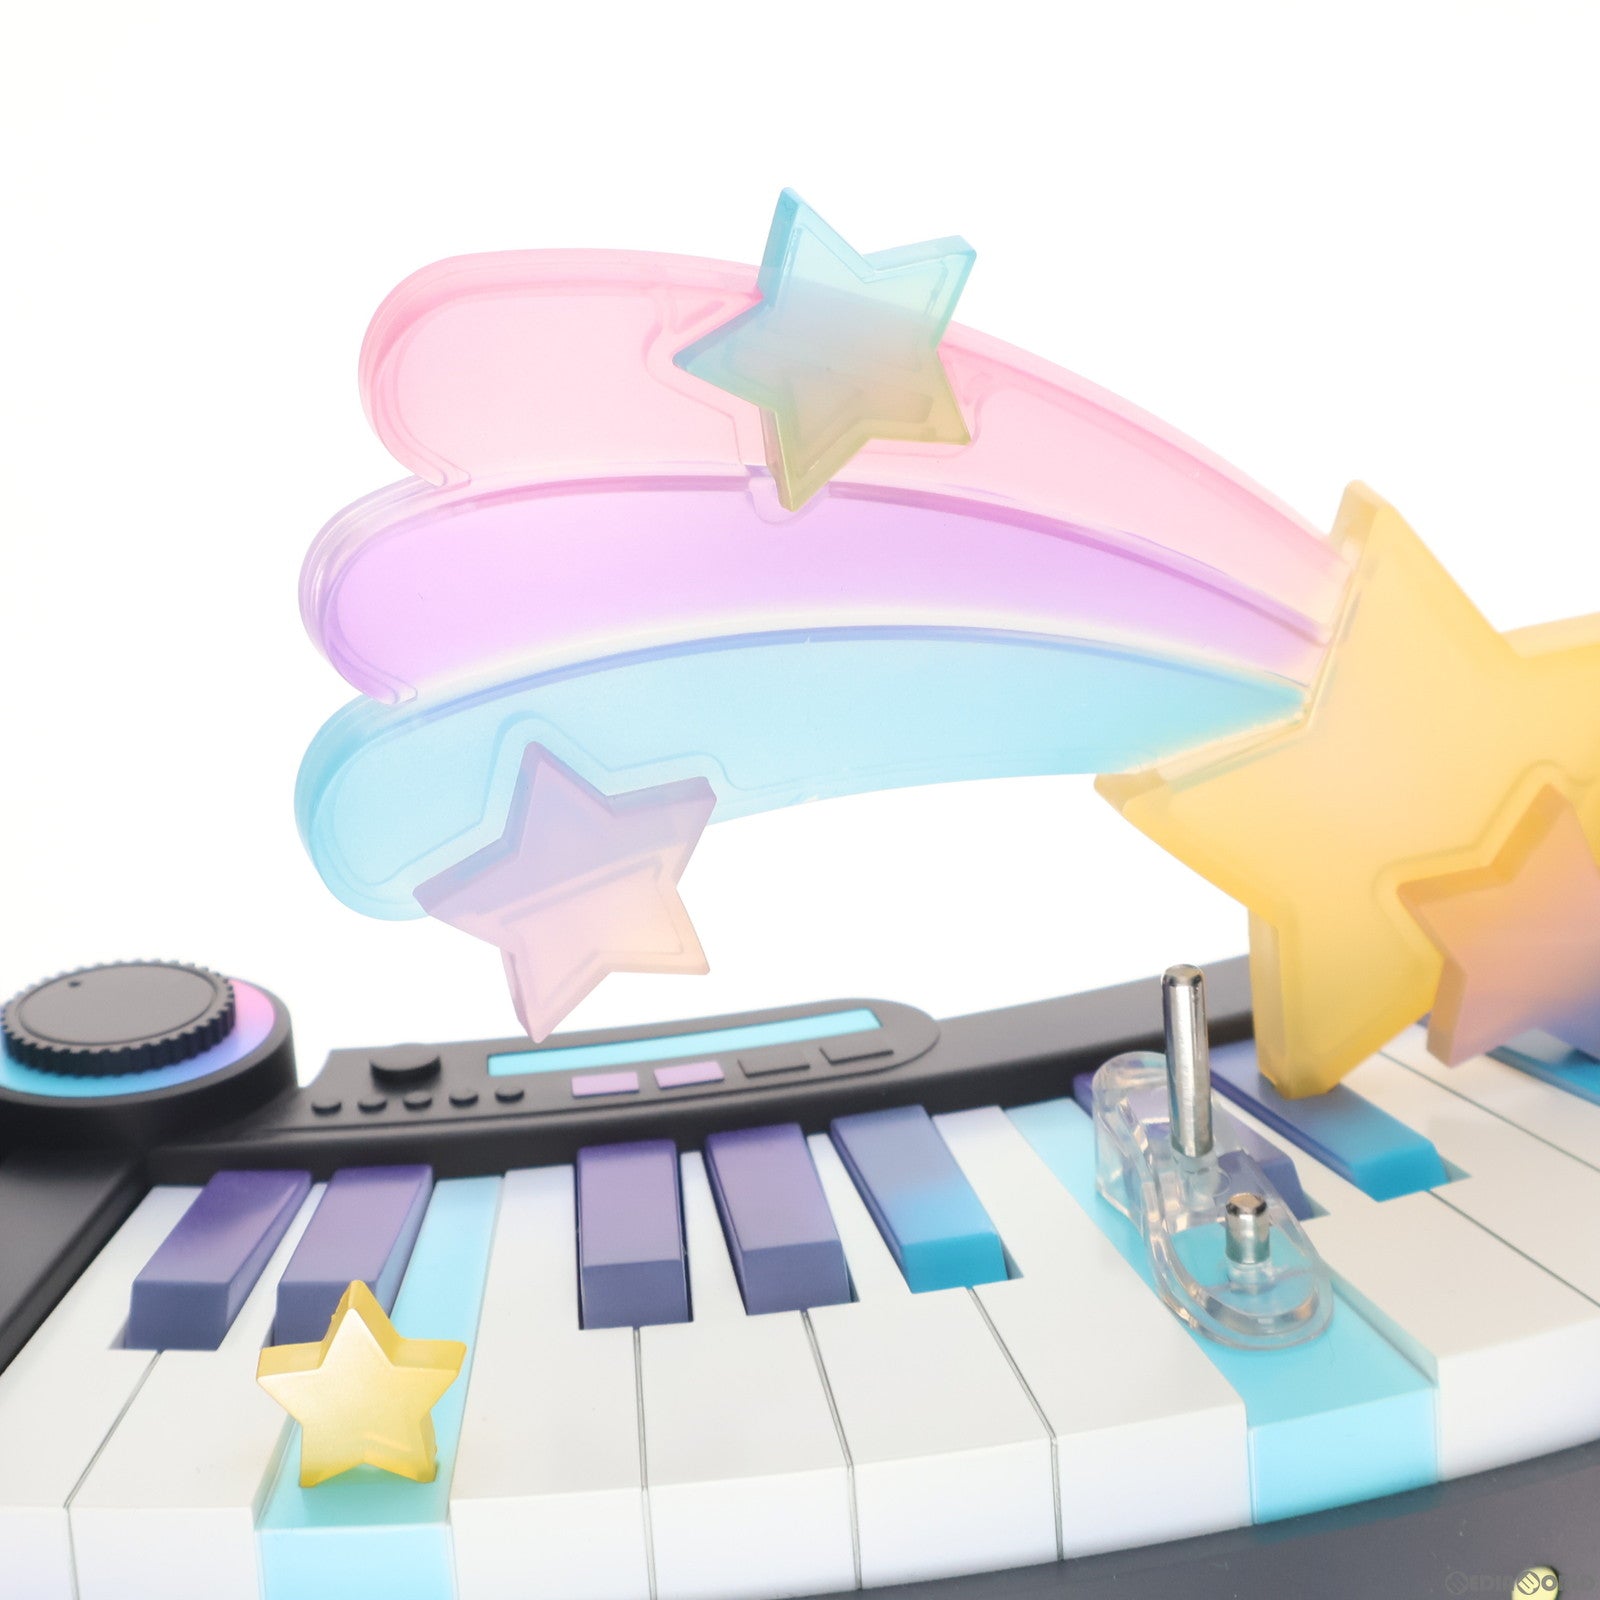 【中古即納】[FIG]初音ミク HATSUNE MIKU Digital Stars 2021 ver. キャラクター・ボーカル・シリーズ01 初音ミク 1/7 完成品 フィギュア ホビーストック(20220821)